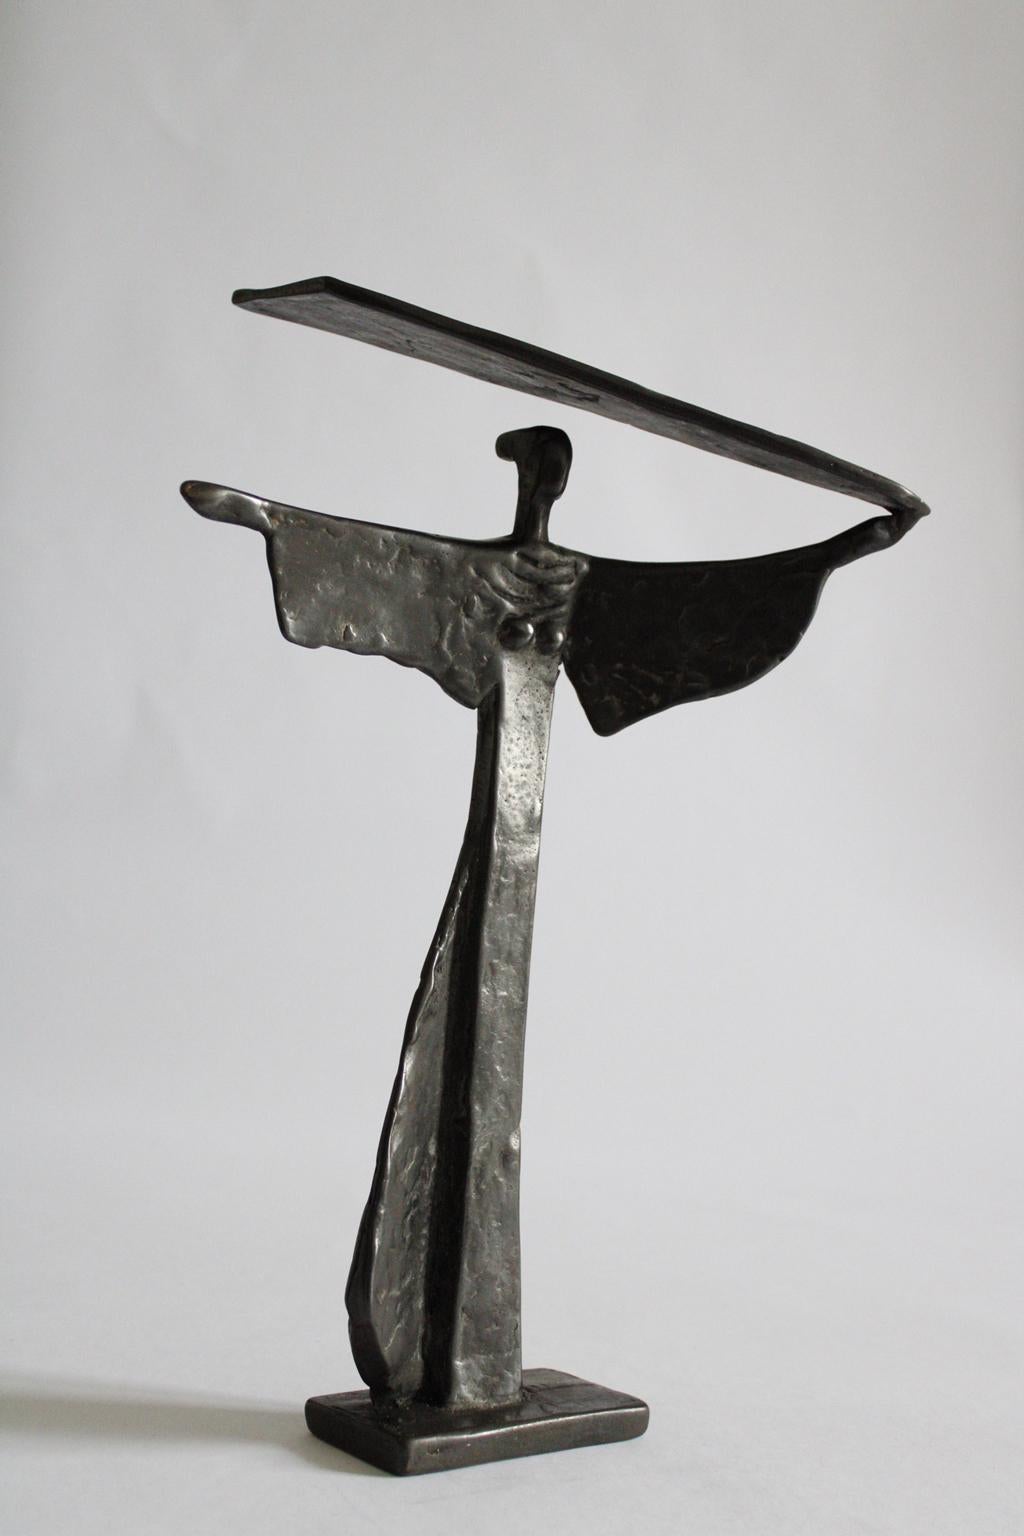 Ugo Cara' wurde 1908 in Triest, Italien, geboren. Er nahm an zahlreichen nationalen und internationalen Ausstellungen teil, darunter: Internationale Biennale in Venedig, Quadriennalen in Rom und Turin. Skulpturenausstellungen, zeitgenössisches